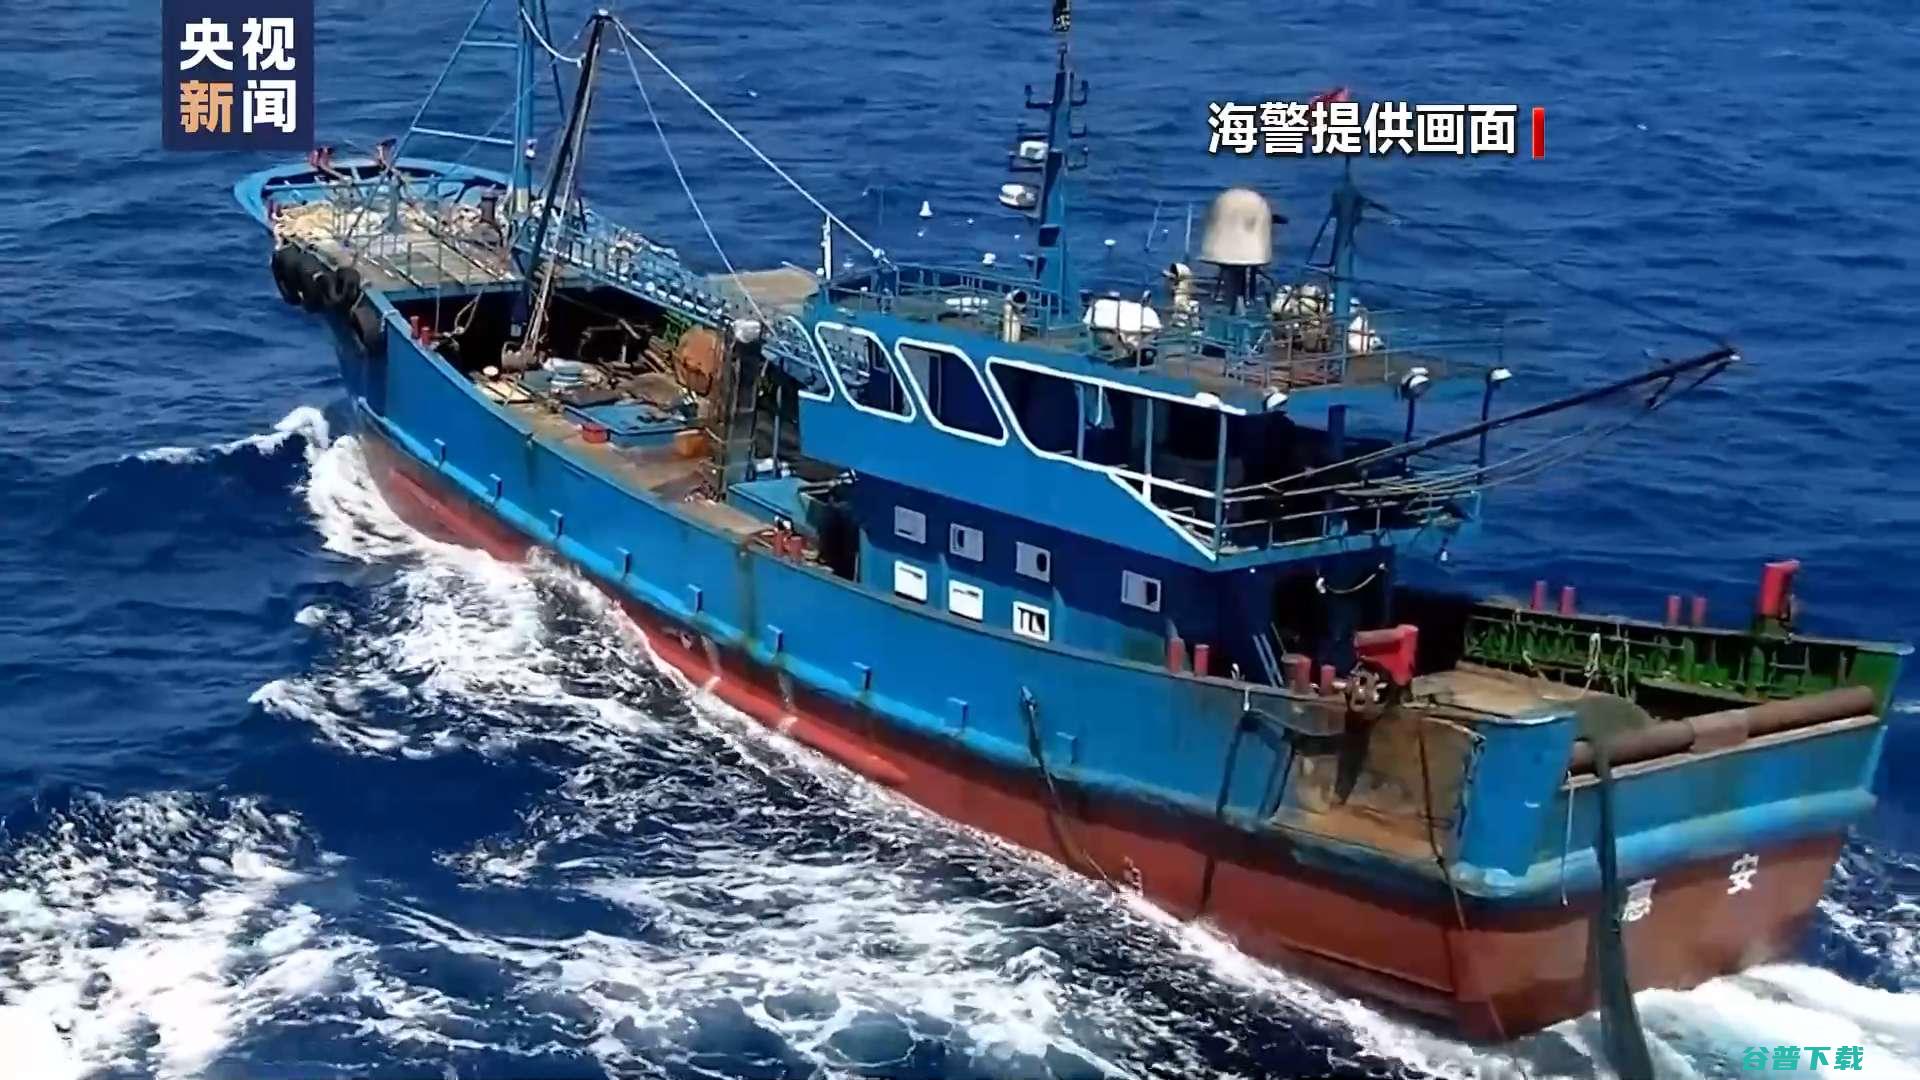 福建海警查扣一艘涉嫌合法捕捞台湾省籍渔船 (福建海警电话多少)